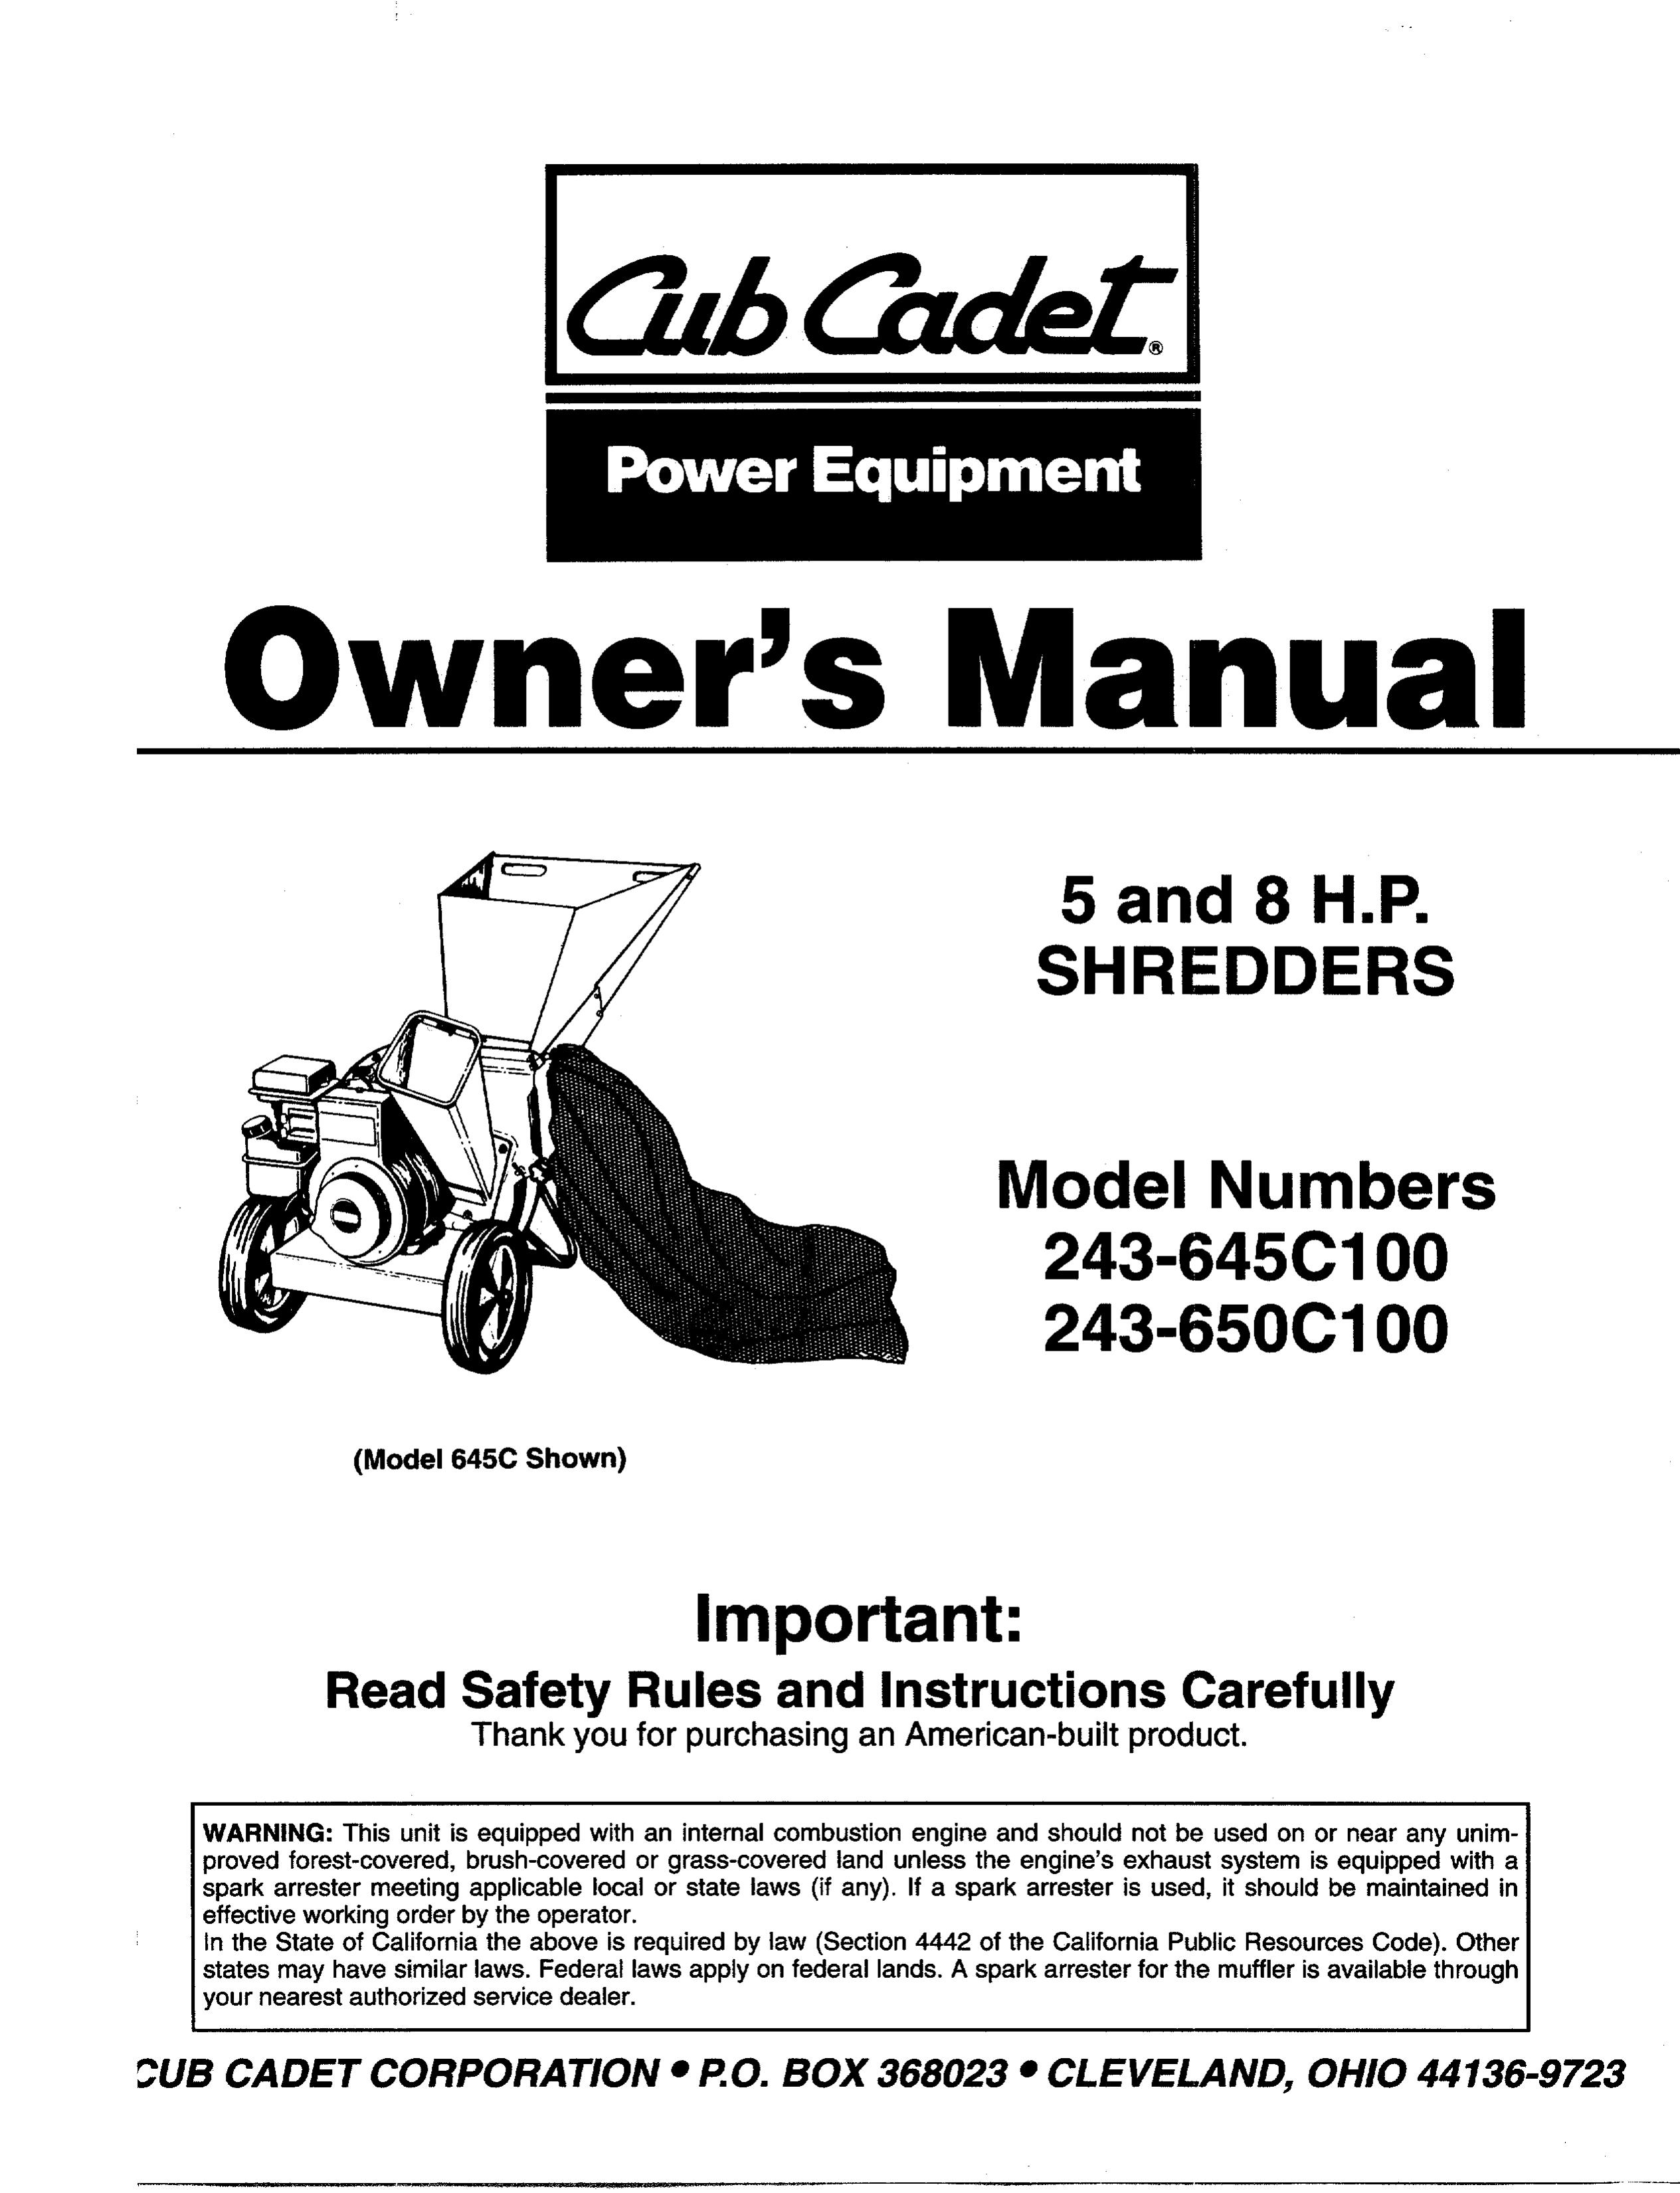 Cub Cadet 243-650C100 Chipper User Manual